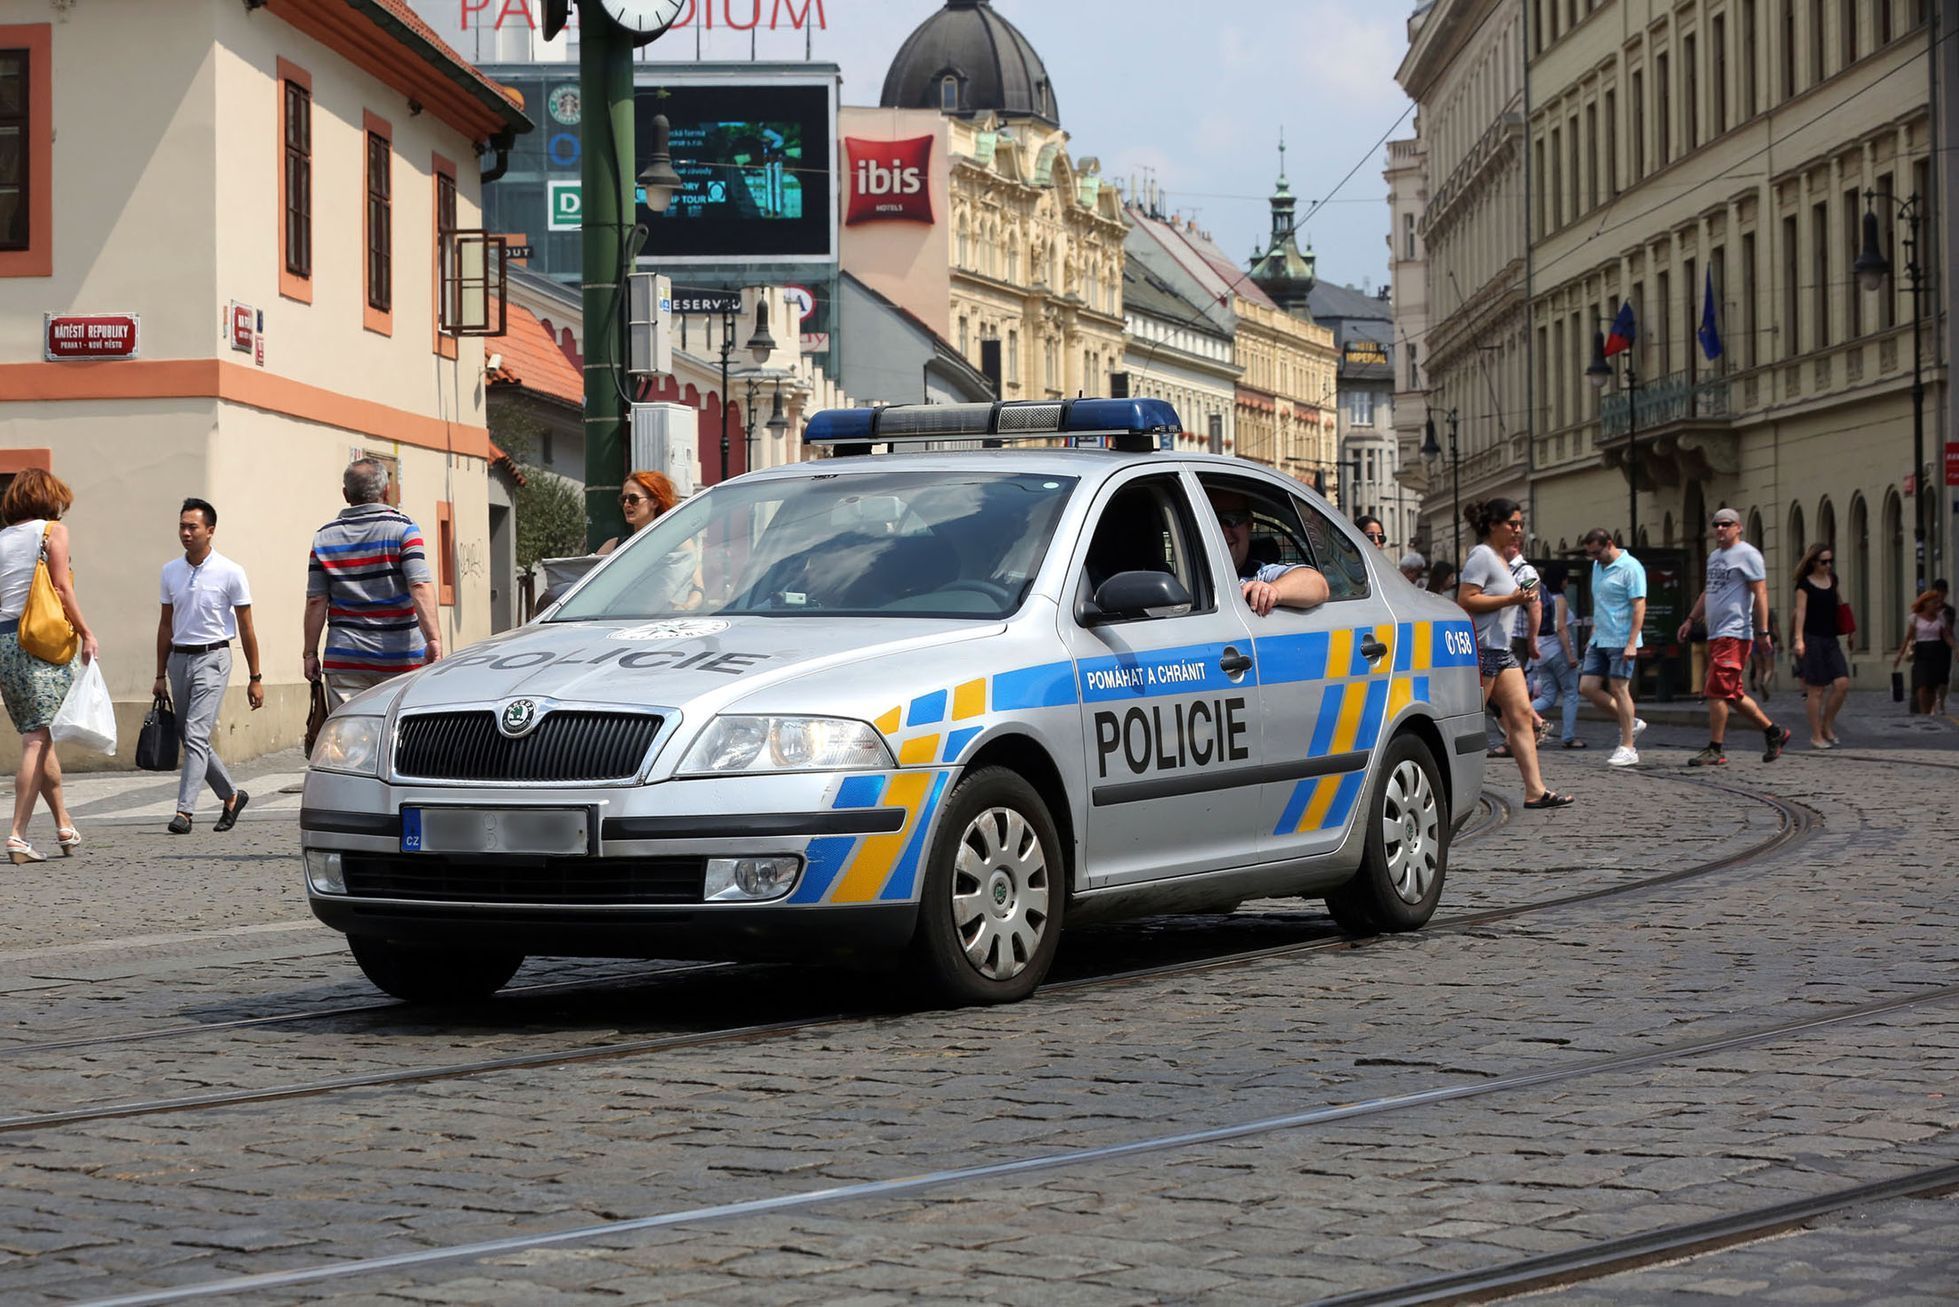 Policie ČR / Státní policie / Policejní auto / Policejní hlídka / Ulice / Náměstí Republiky / Ilustrační foto / Praha / Léto / 2018 / 1